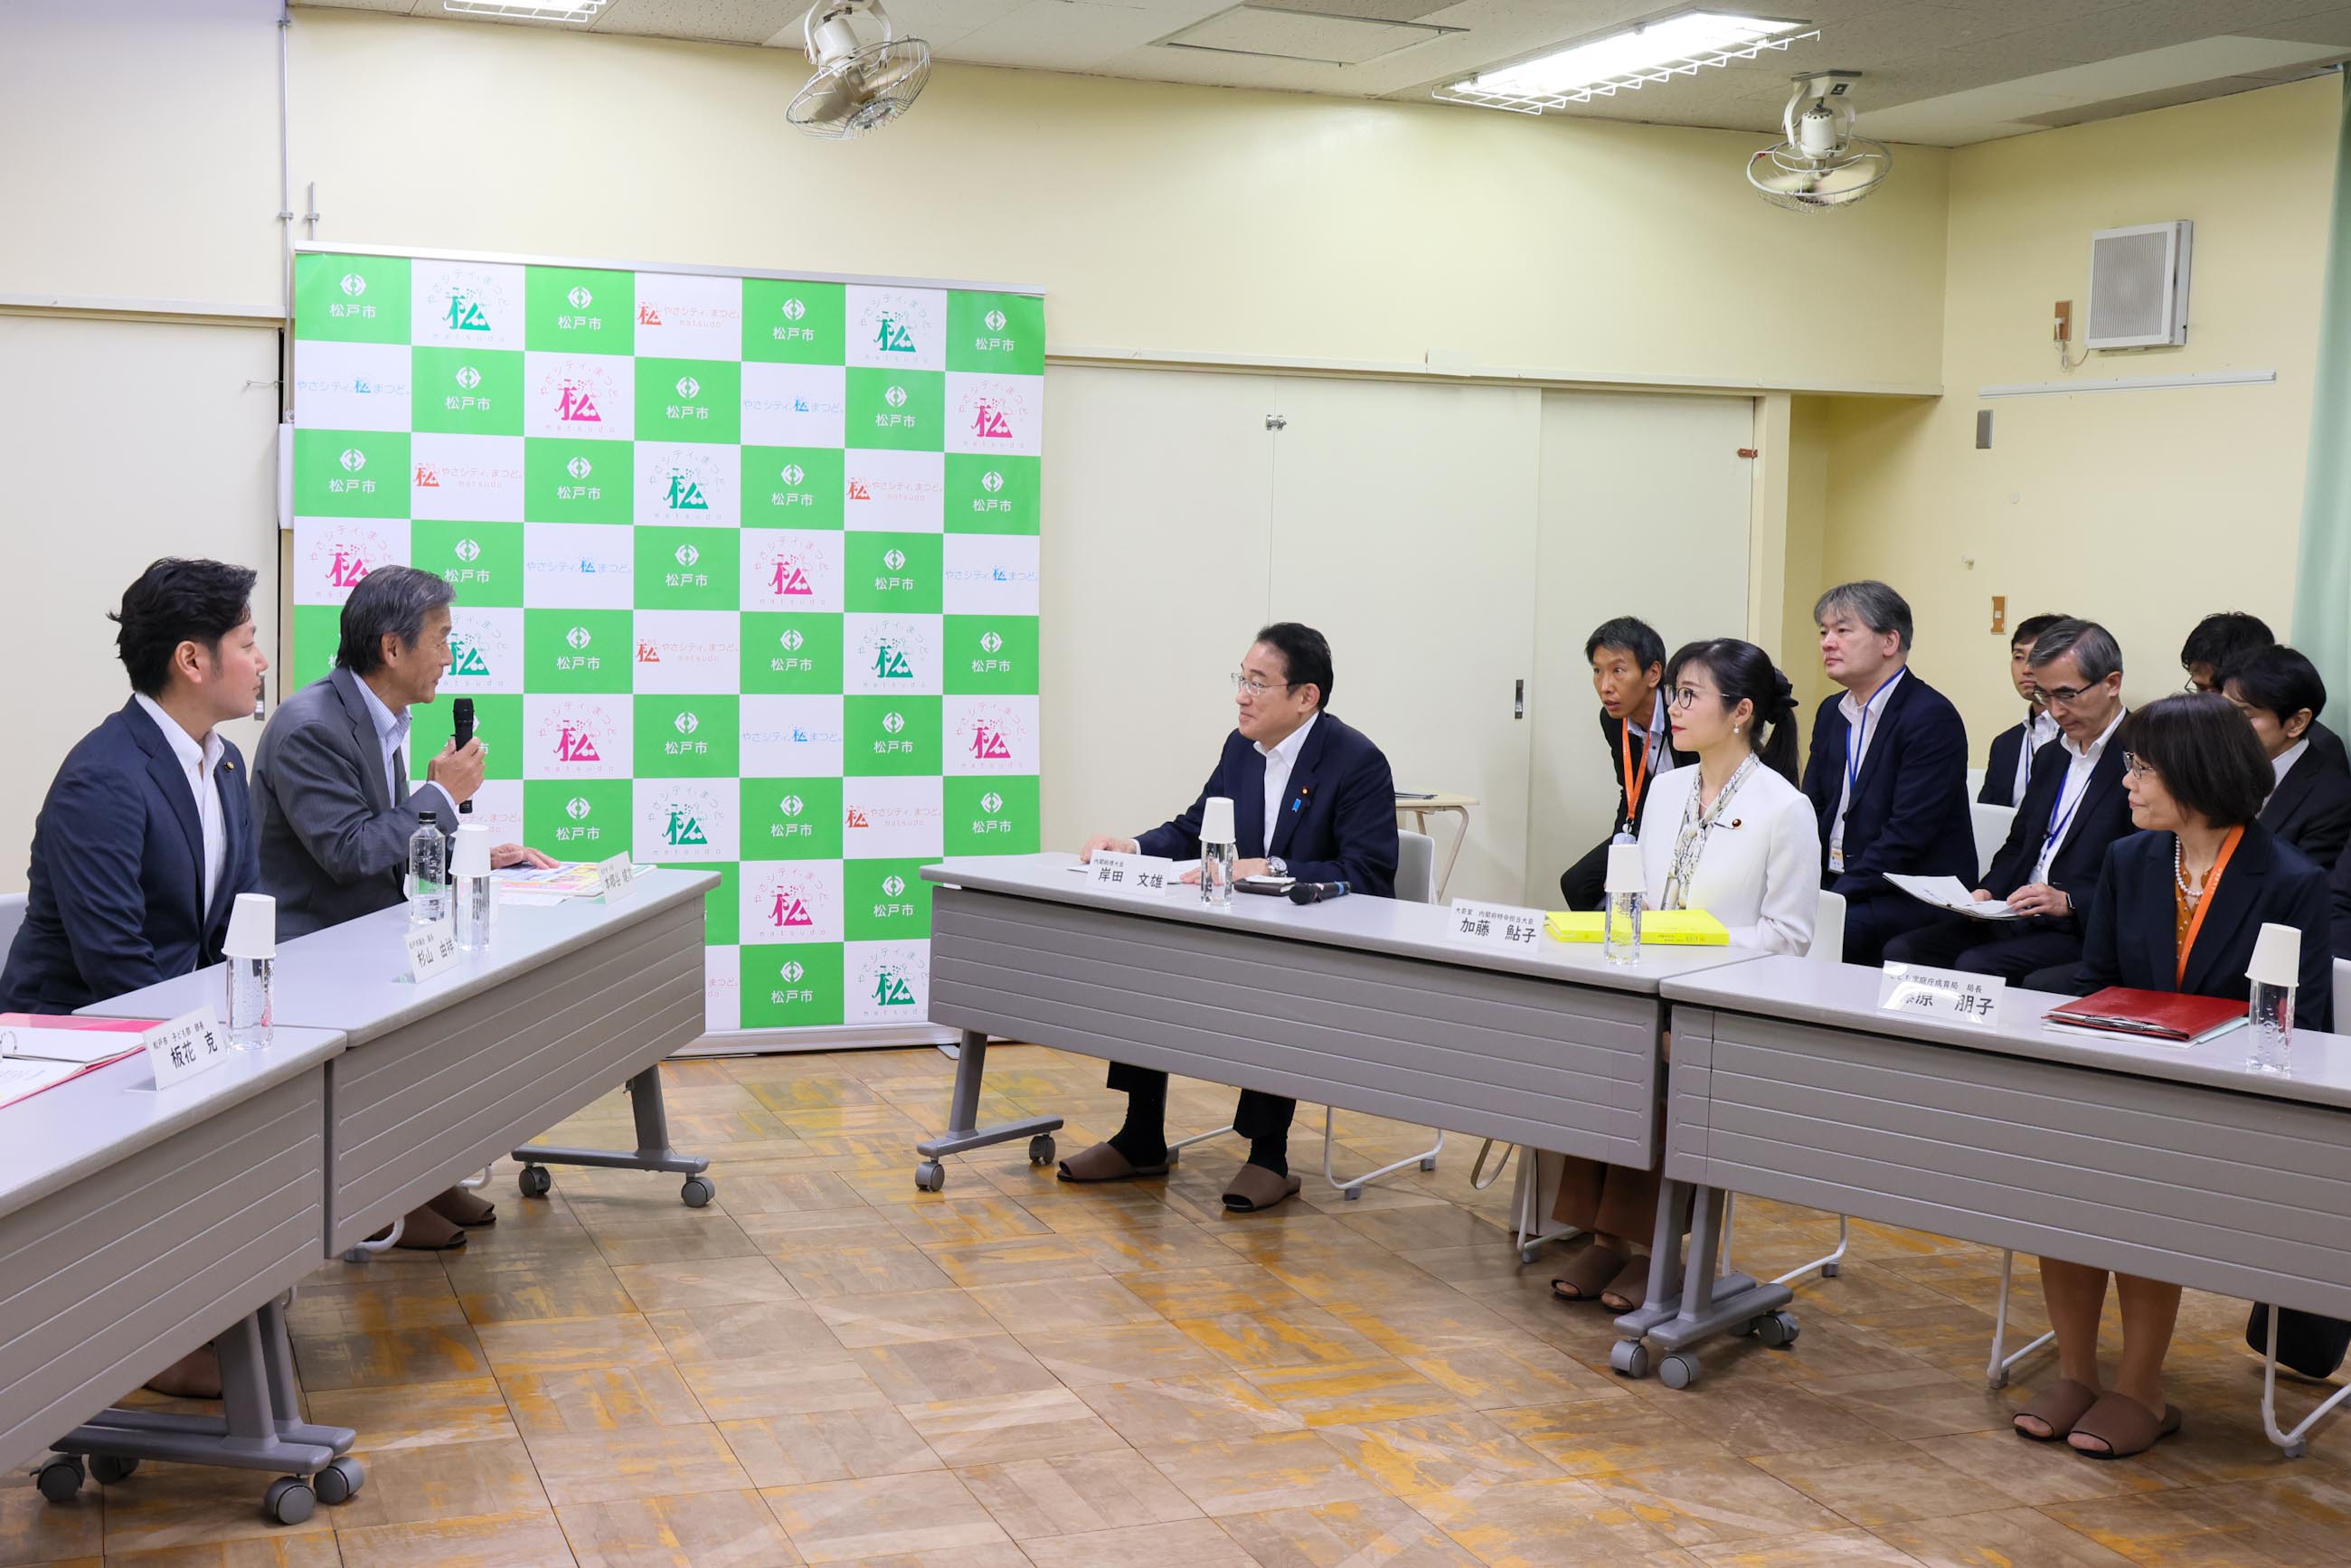 岸田首相听取了关于“任何人都可参加的儿童学前班制度”的情况介绍1